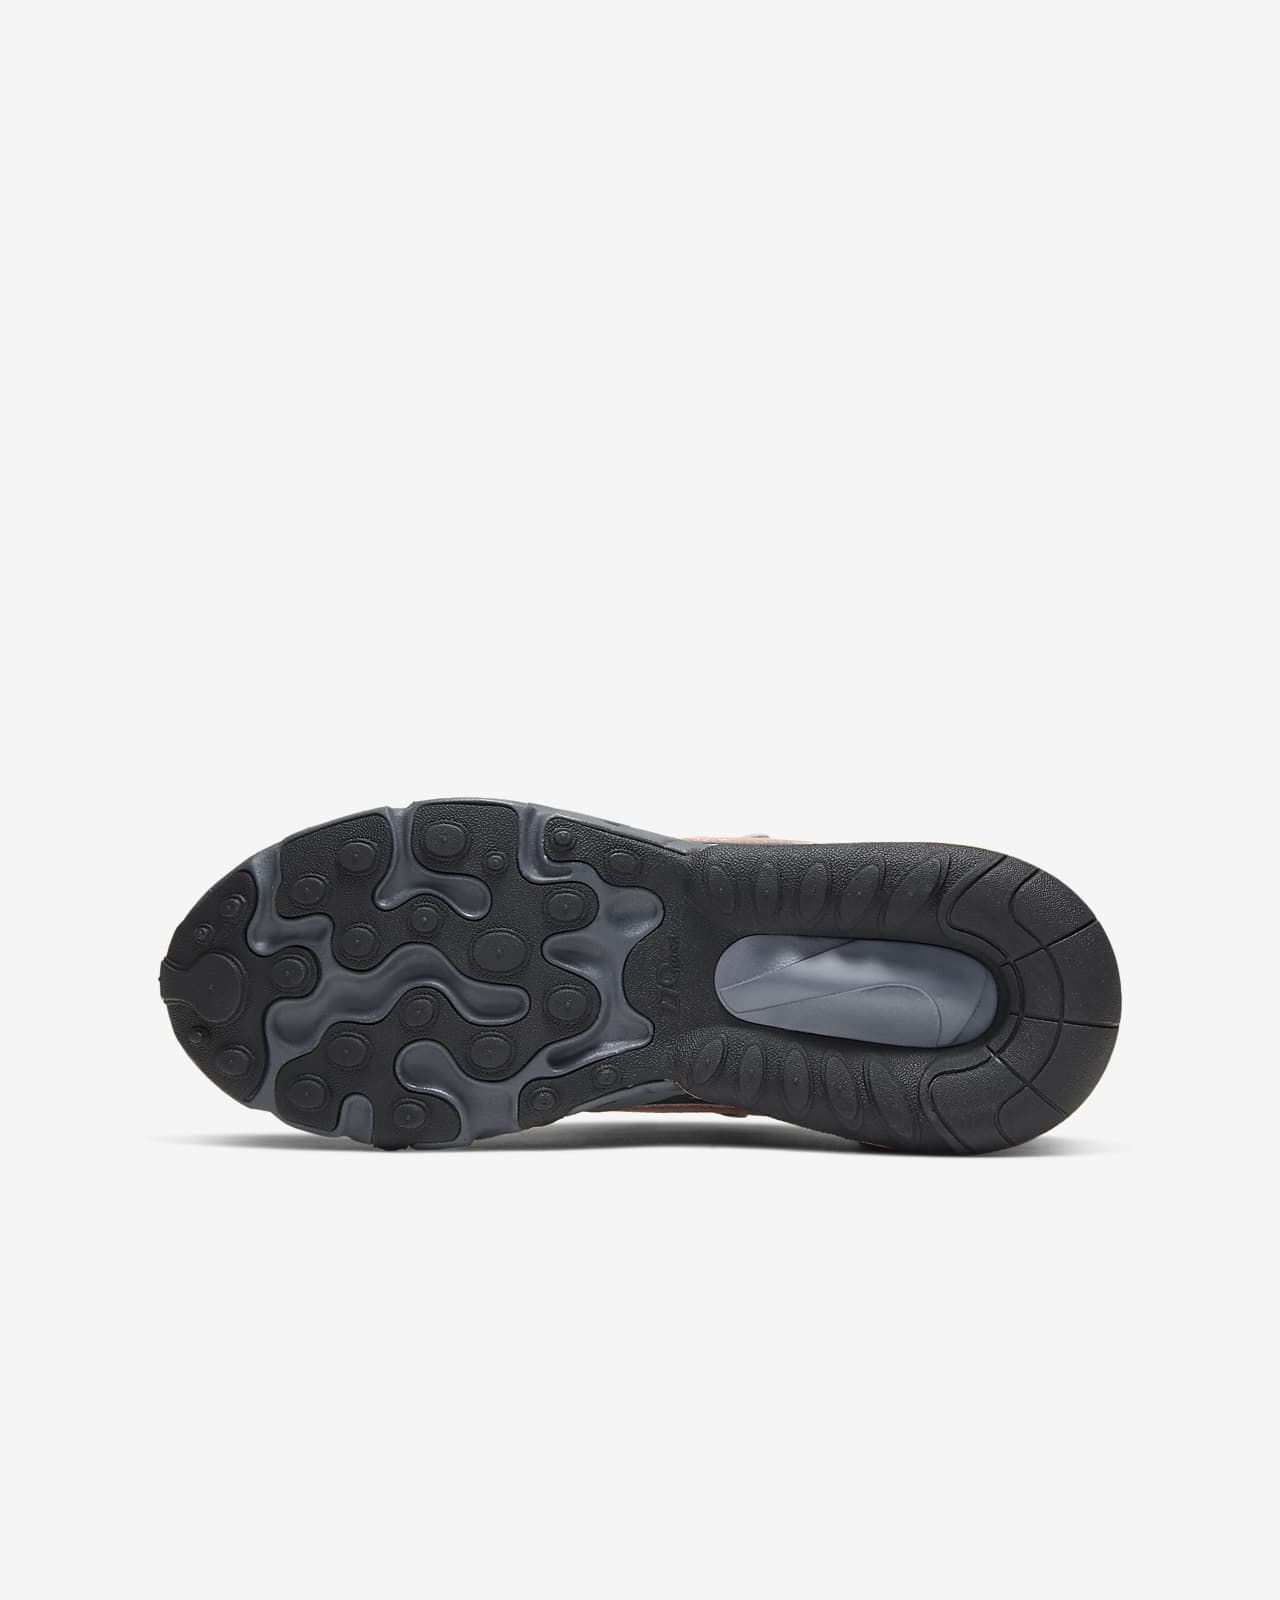 Nike Air Max 270 React Winter Older Kids' Shoe